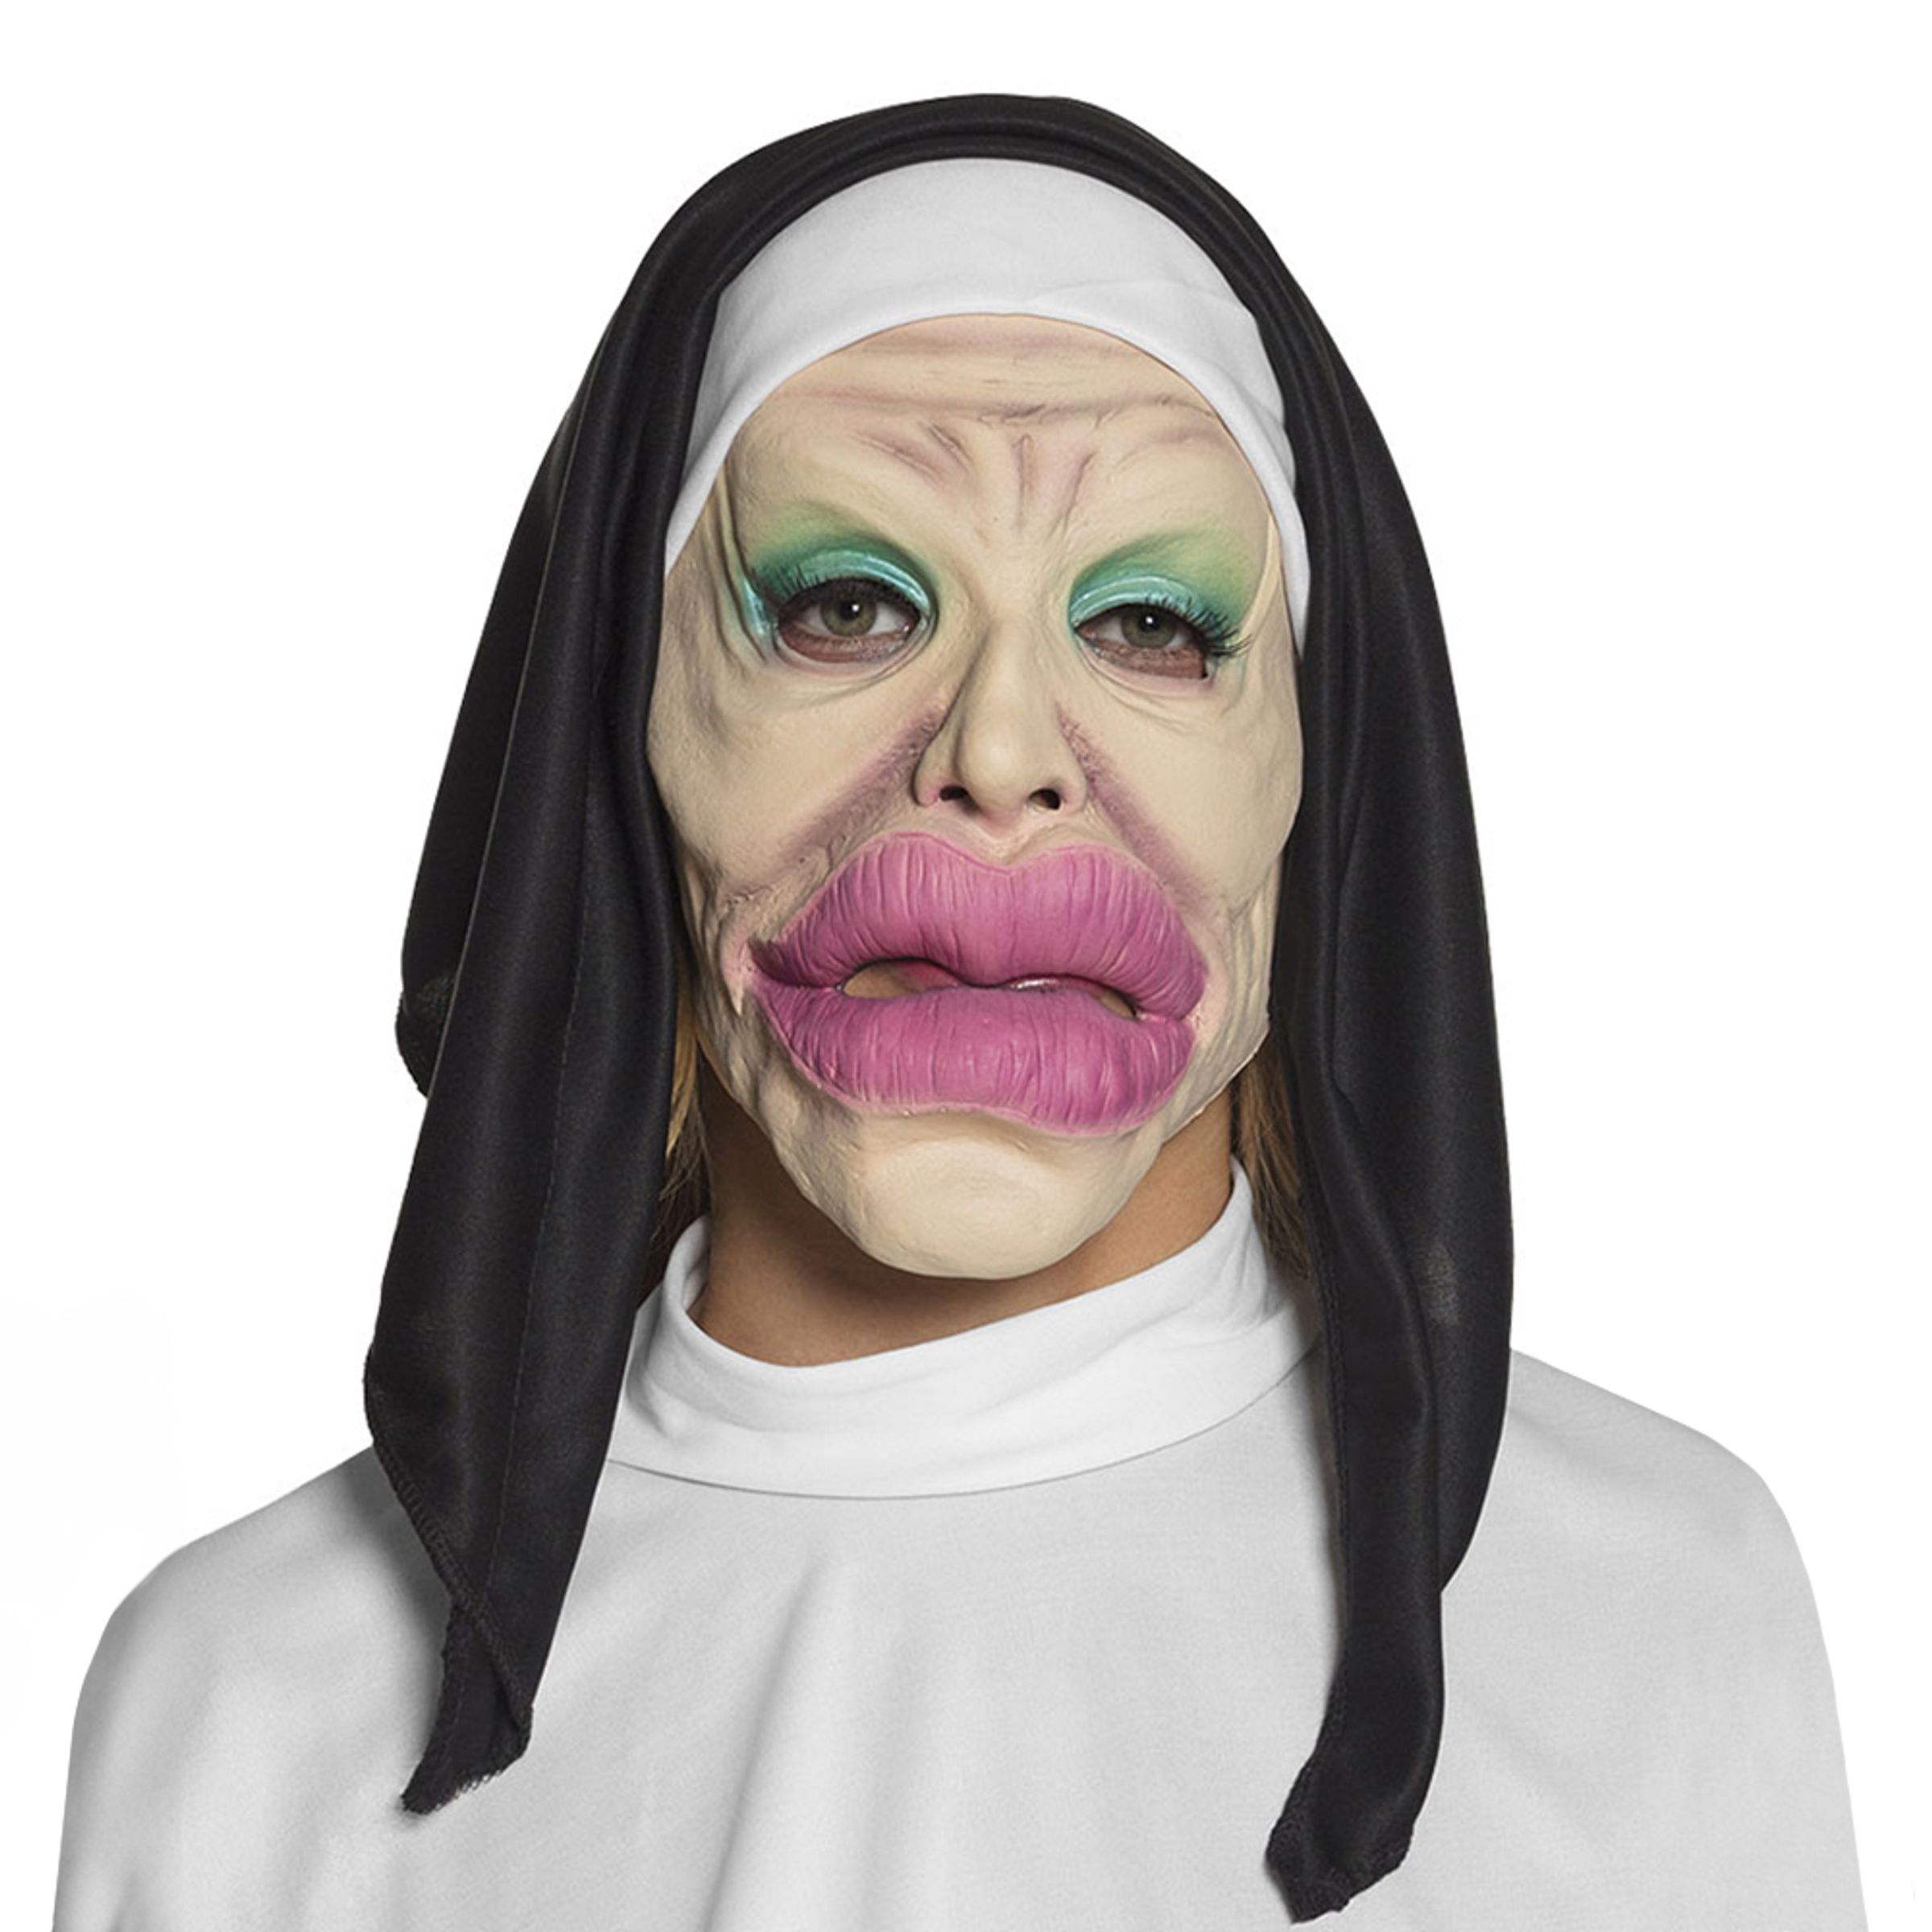 Nunna Mask Heliga Läppar - One size